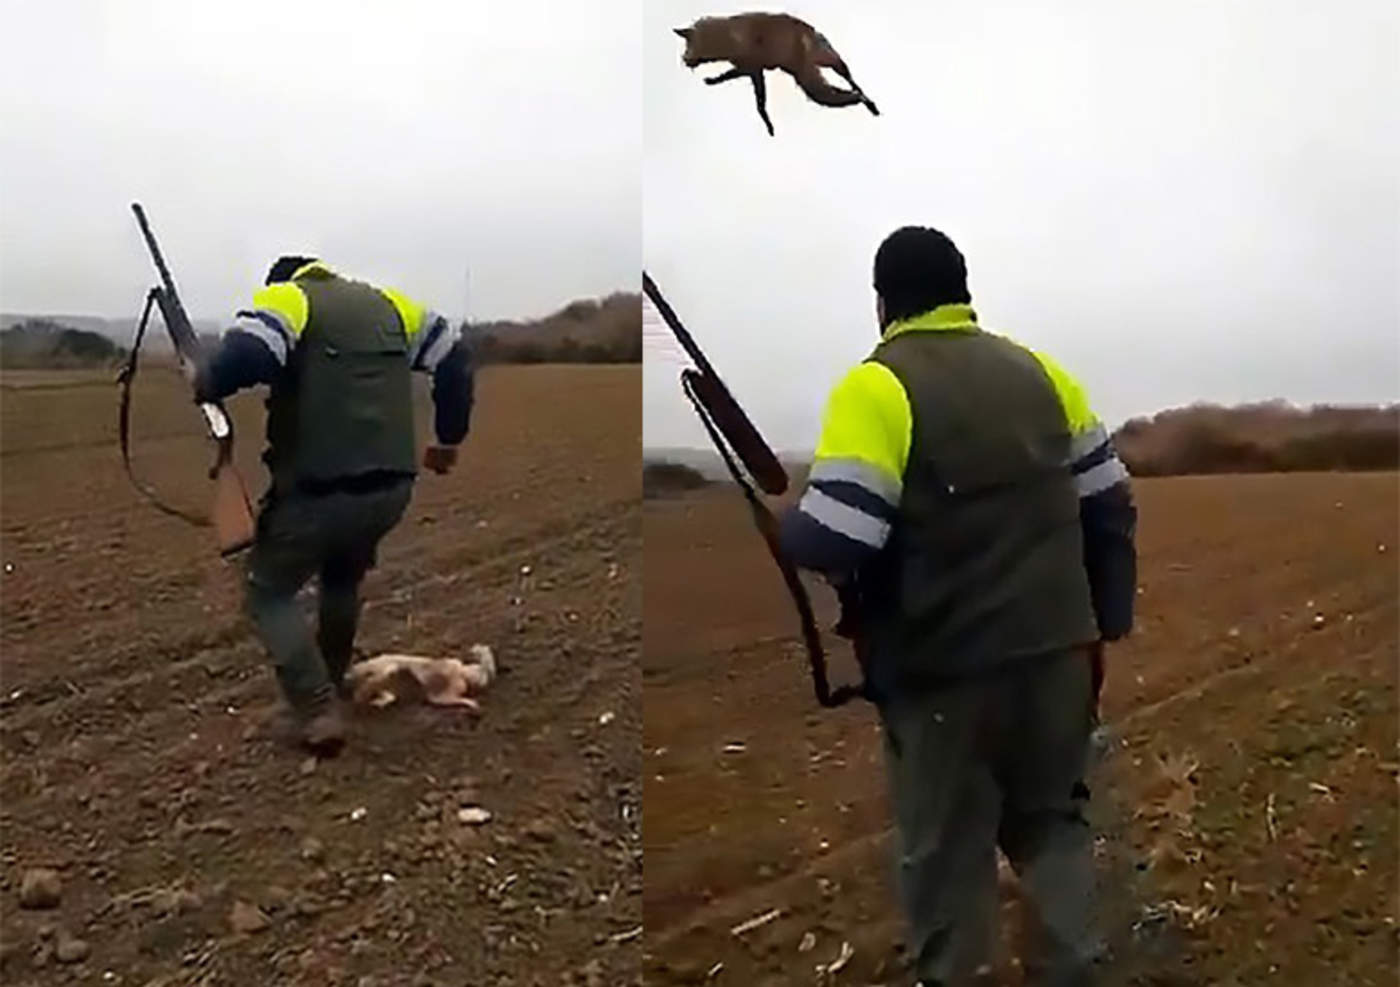 Cazador agrede brutalmente a zorro antes de matarlo